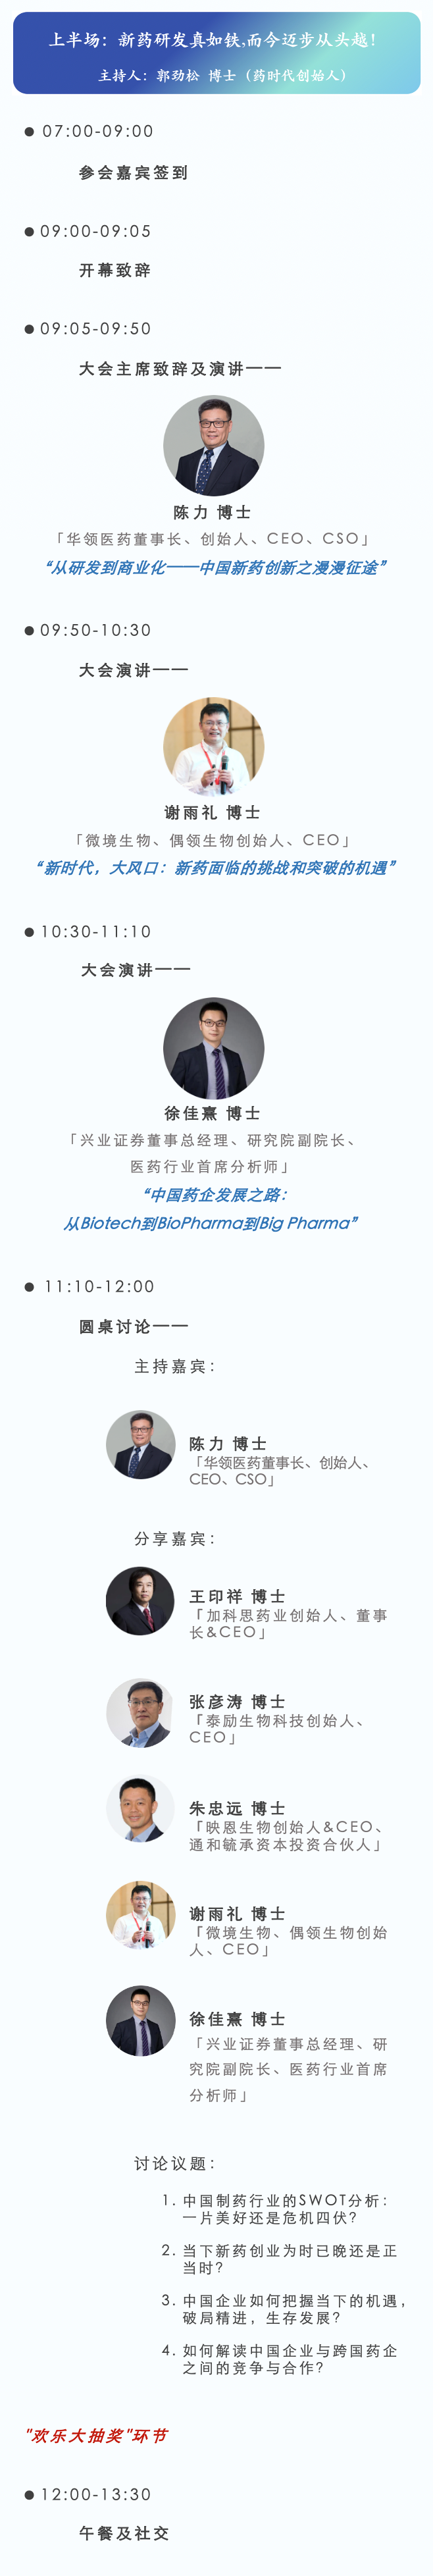 CMC高峰论坛最新时间和地点：11月10-12日·上海张江博雅酒店